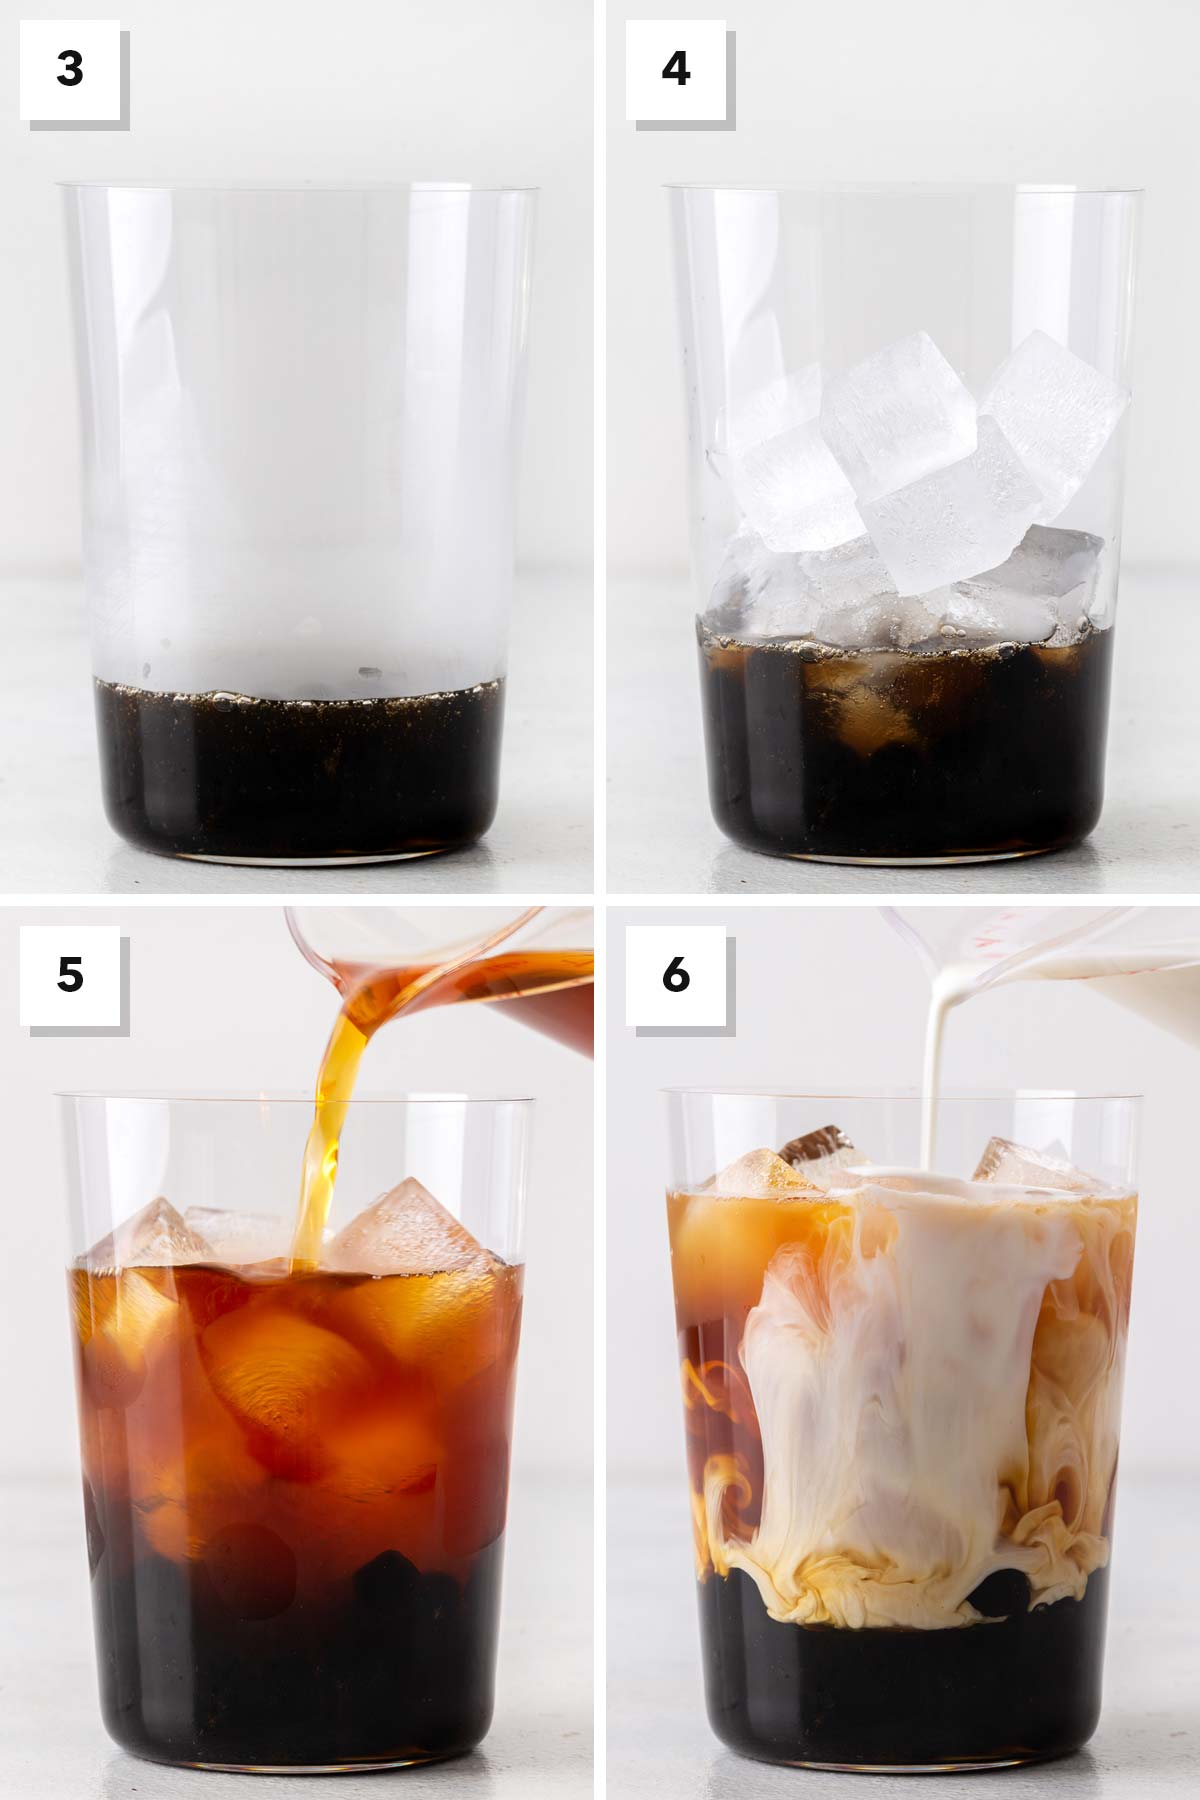 4 photos showing steps to assemble bubble tea.